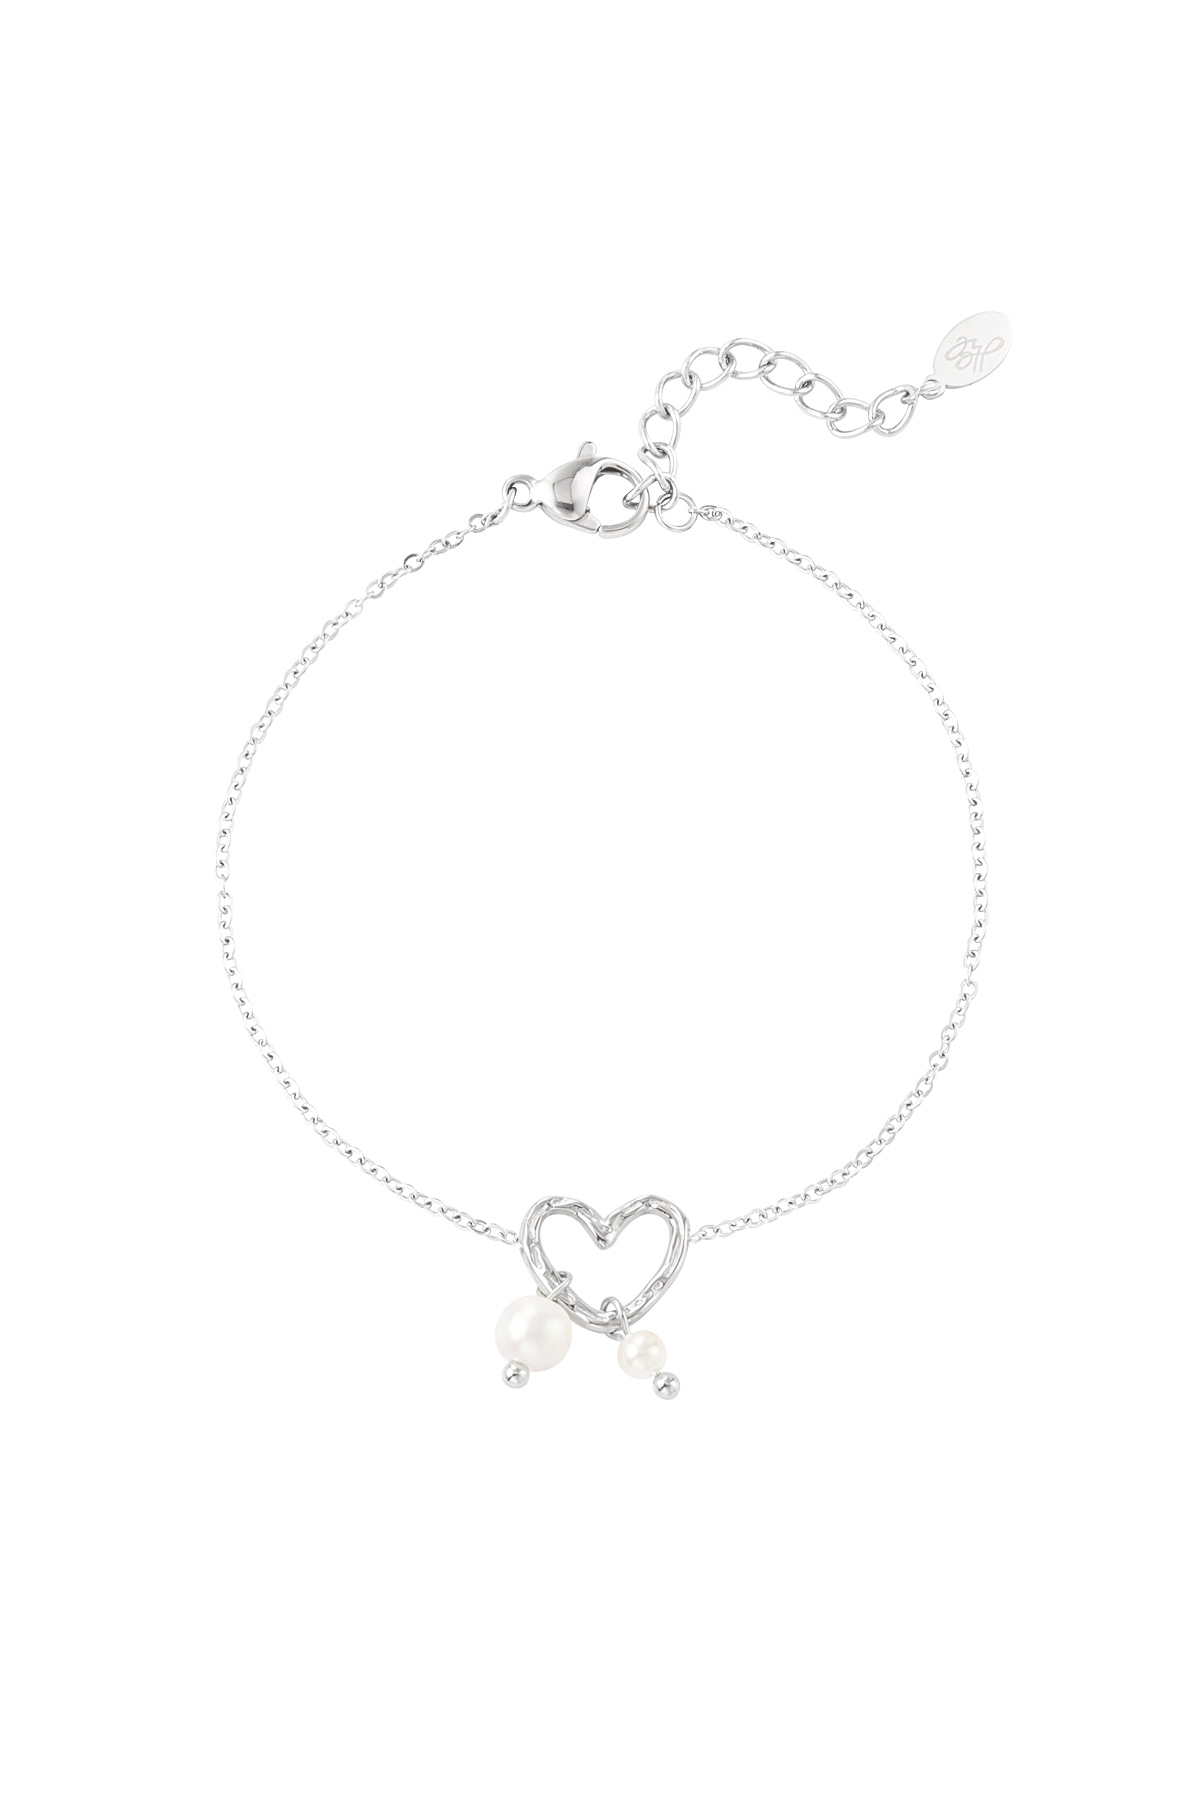 Bracelet pearl heart - silver